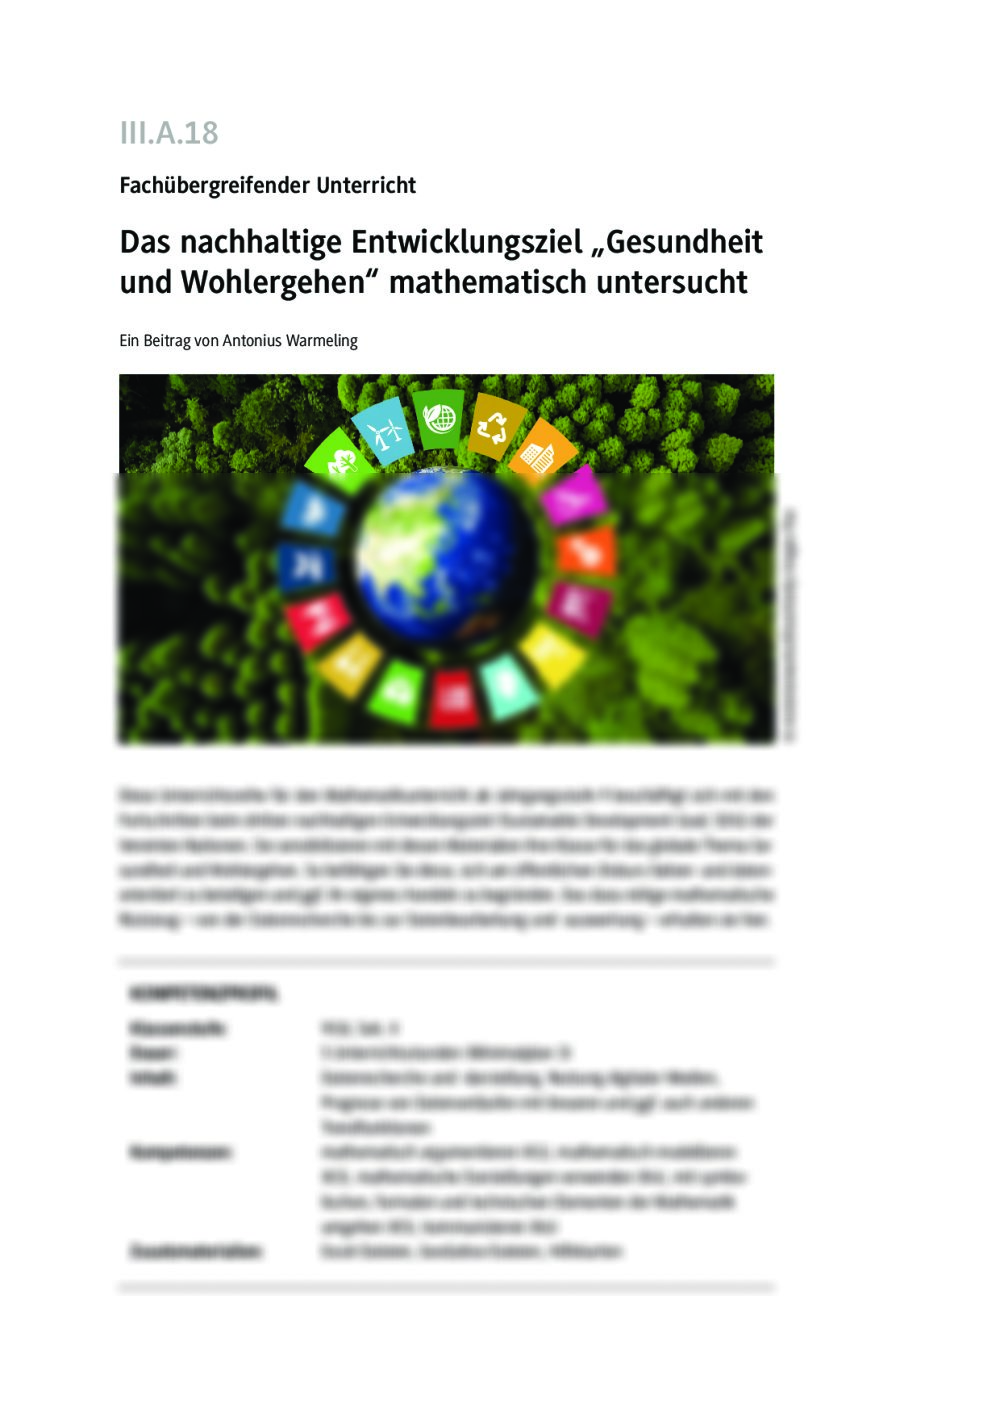 Das nachhaltige Entwicklungsziel Gesundheit und Wohlergehen - Seite 1